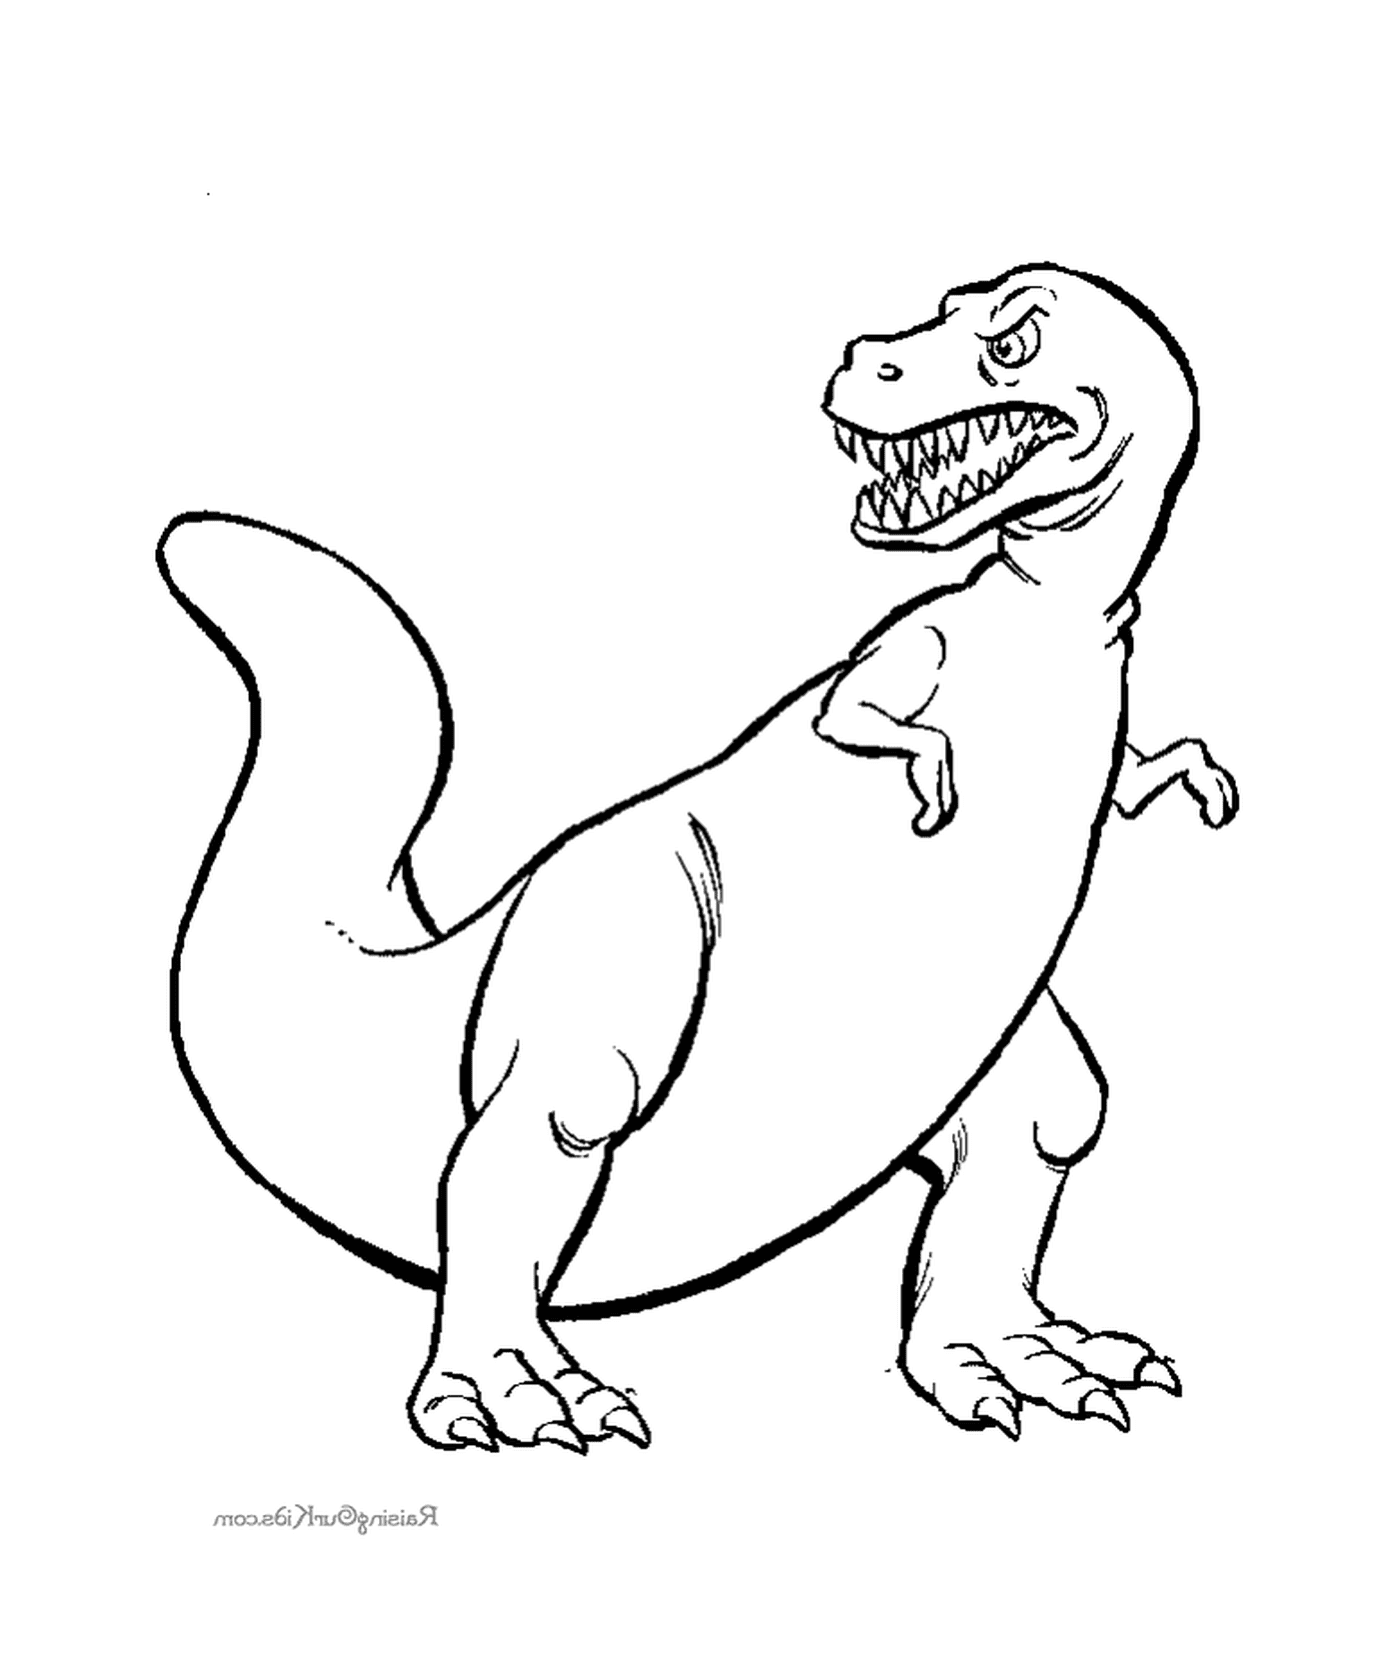  A drawn dinosaur 